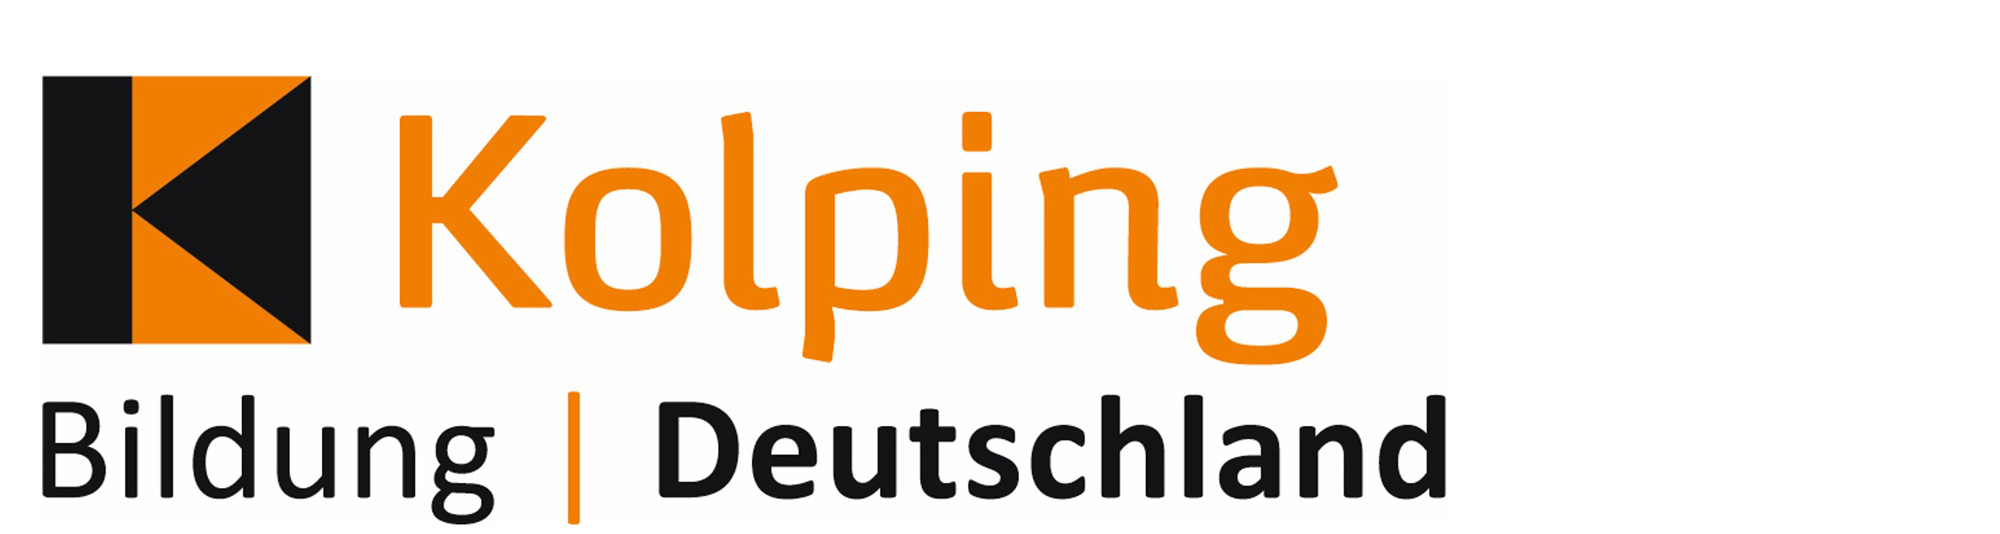 Kolping Bildung Deutschland gGmbH - Pflegeschule Haltern